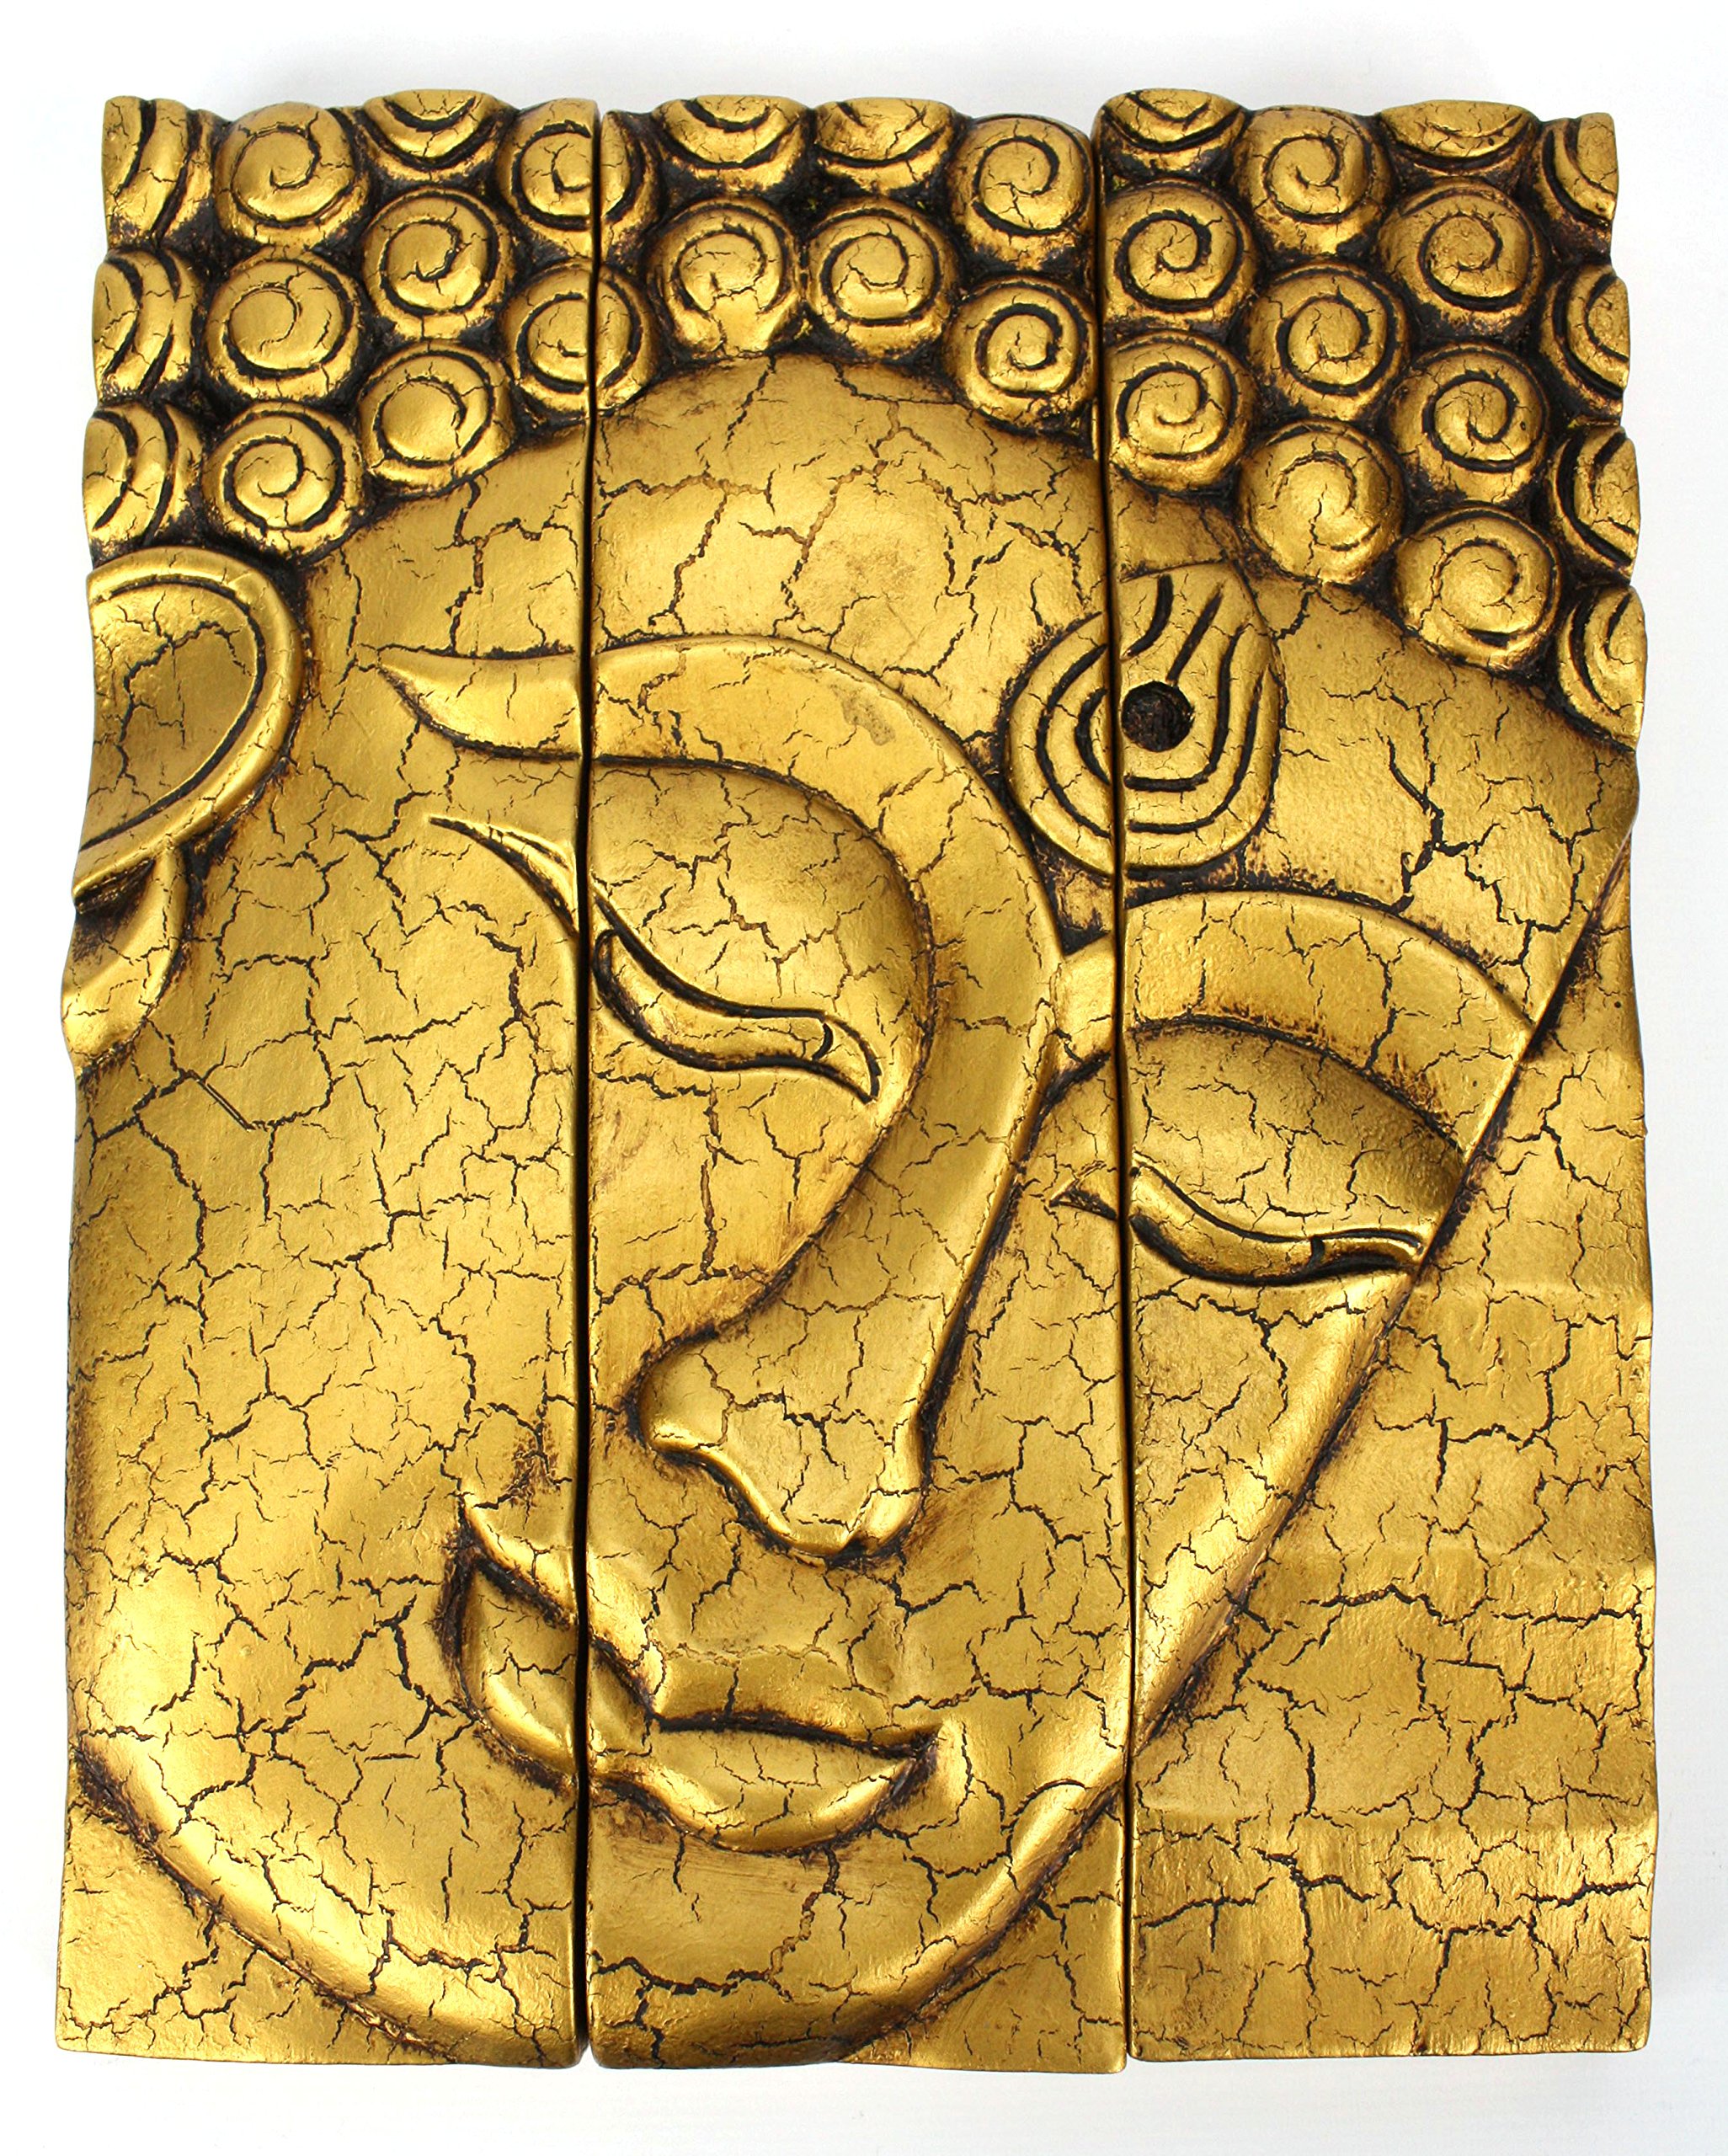 Cracked buddha face photo